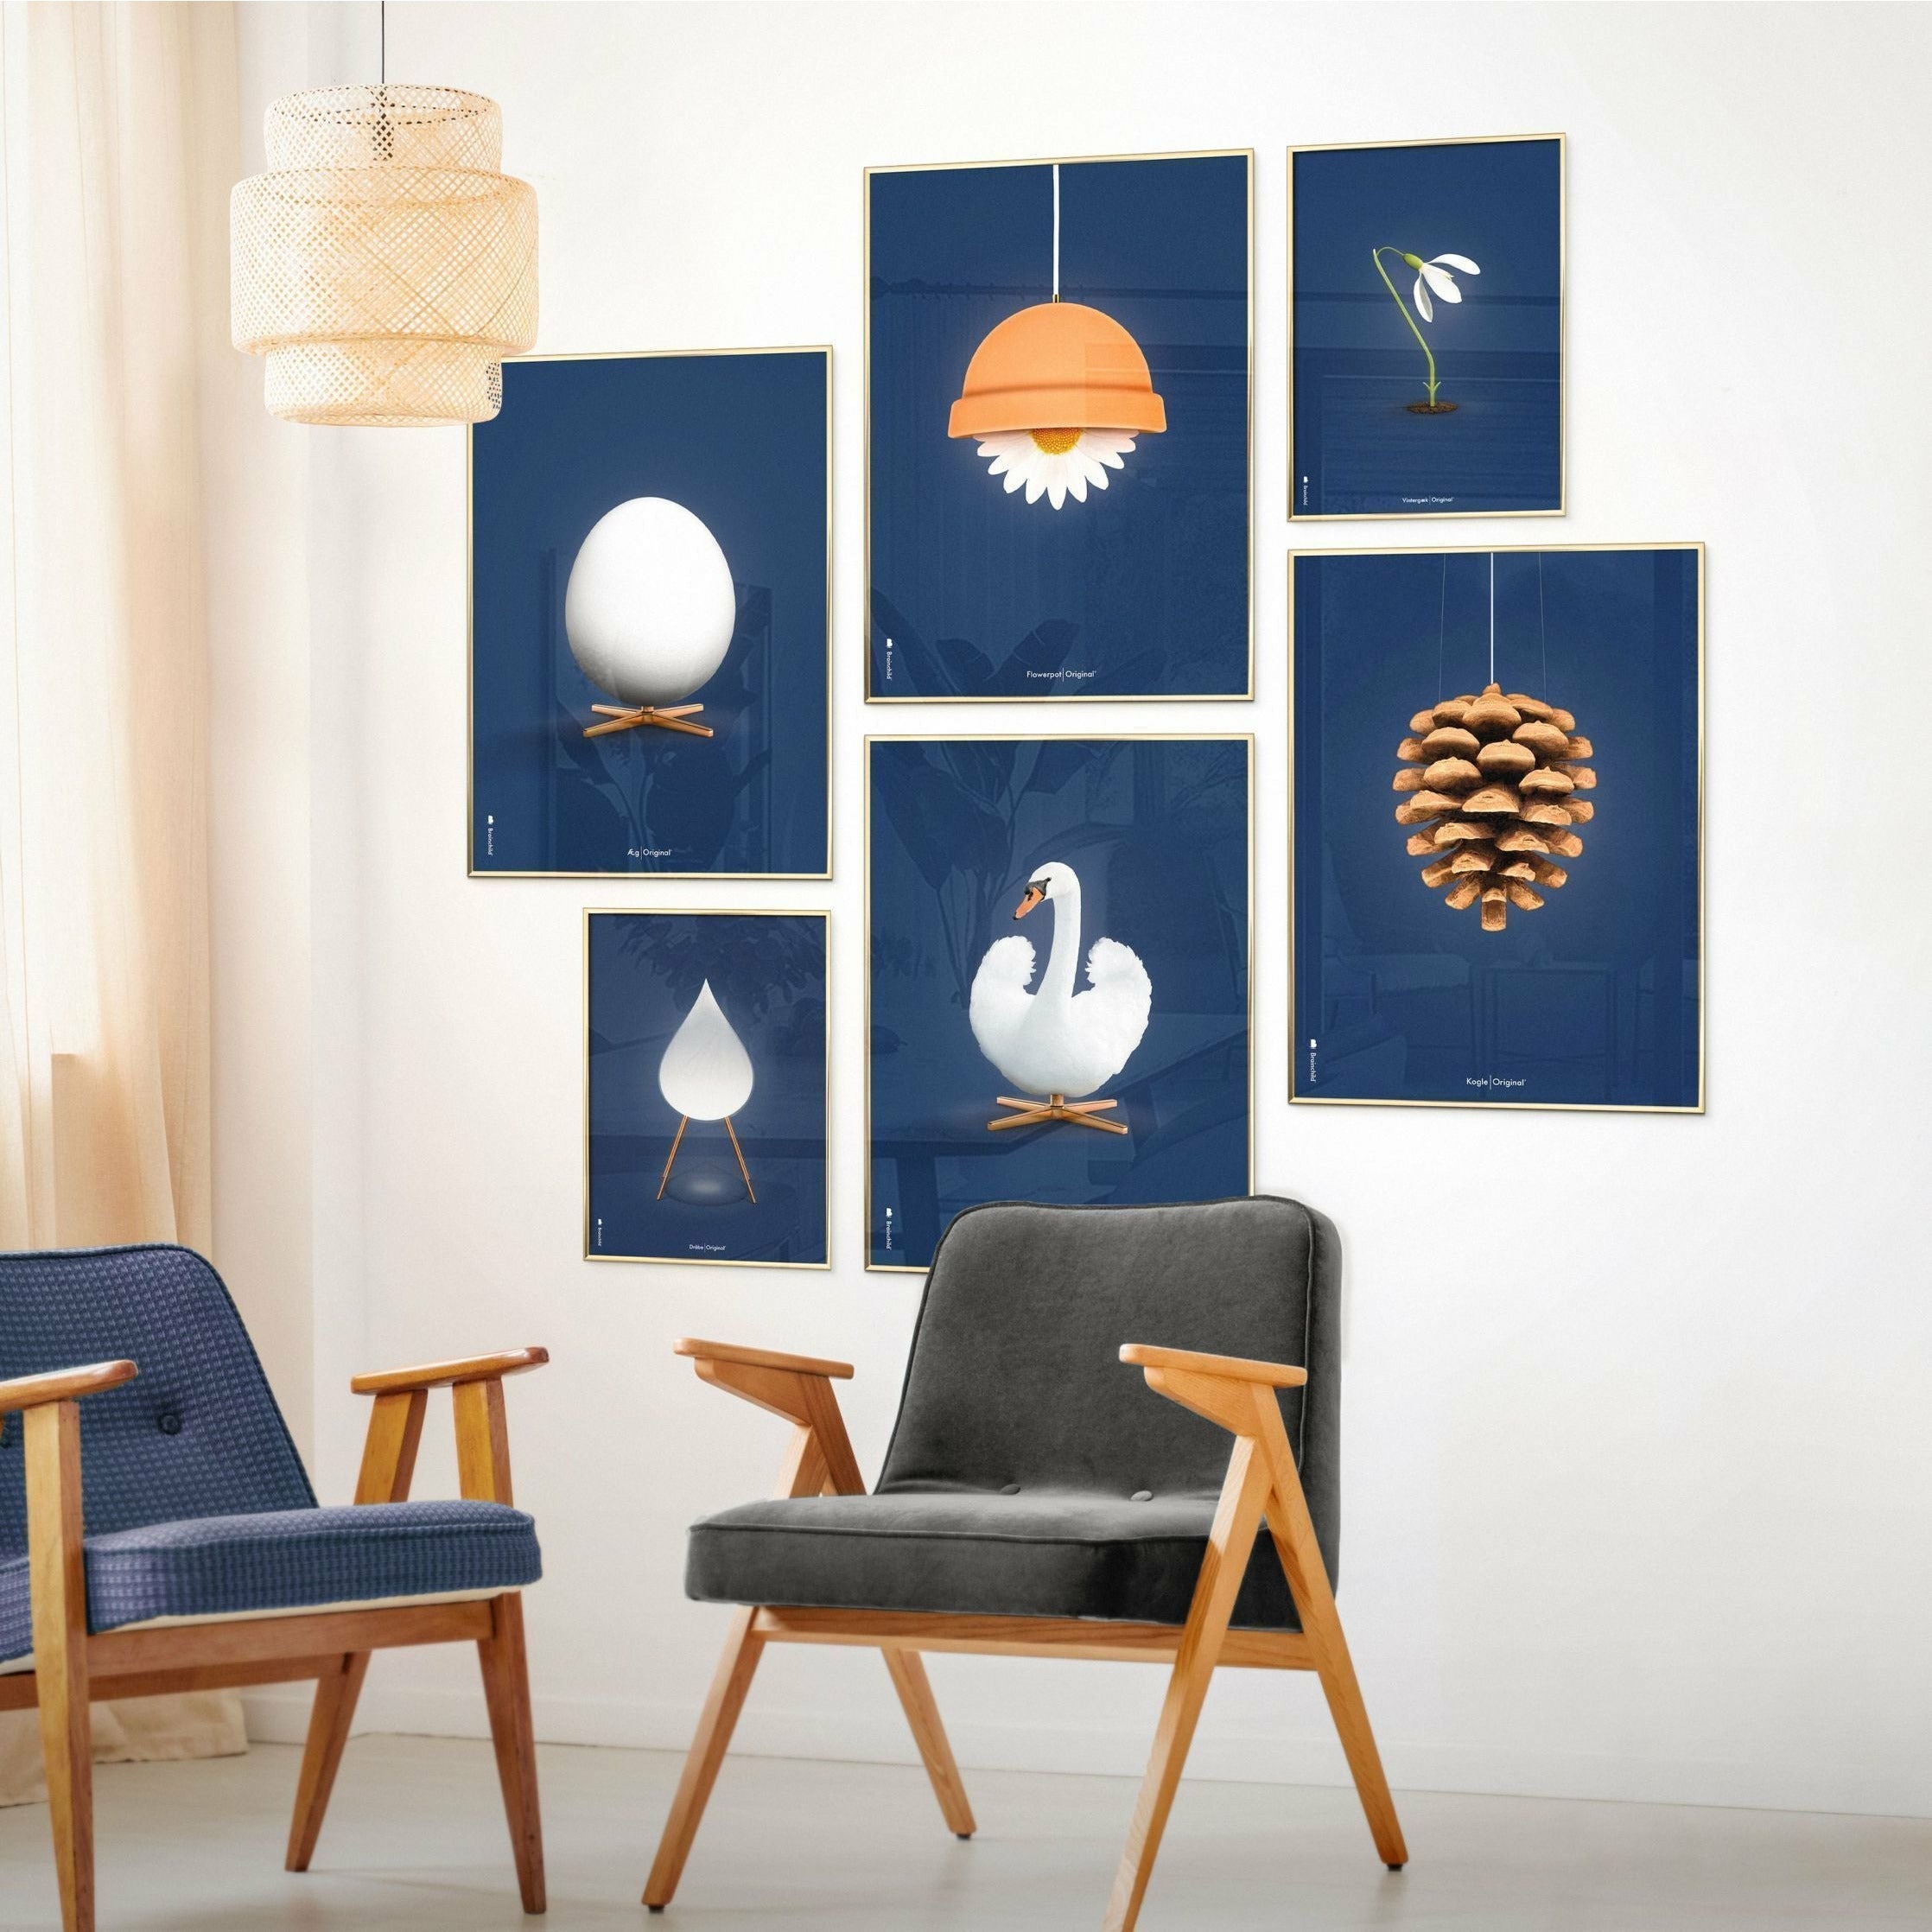 brainchild Poster Classic Cône, cadre en bois laqué noir 50x70 cm, fond bleu foncé